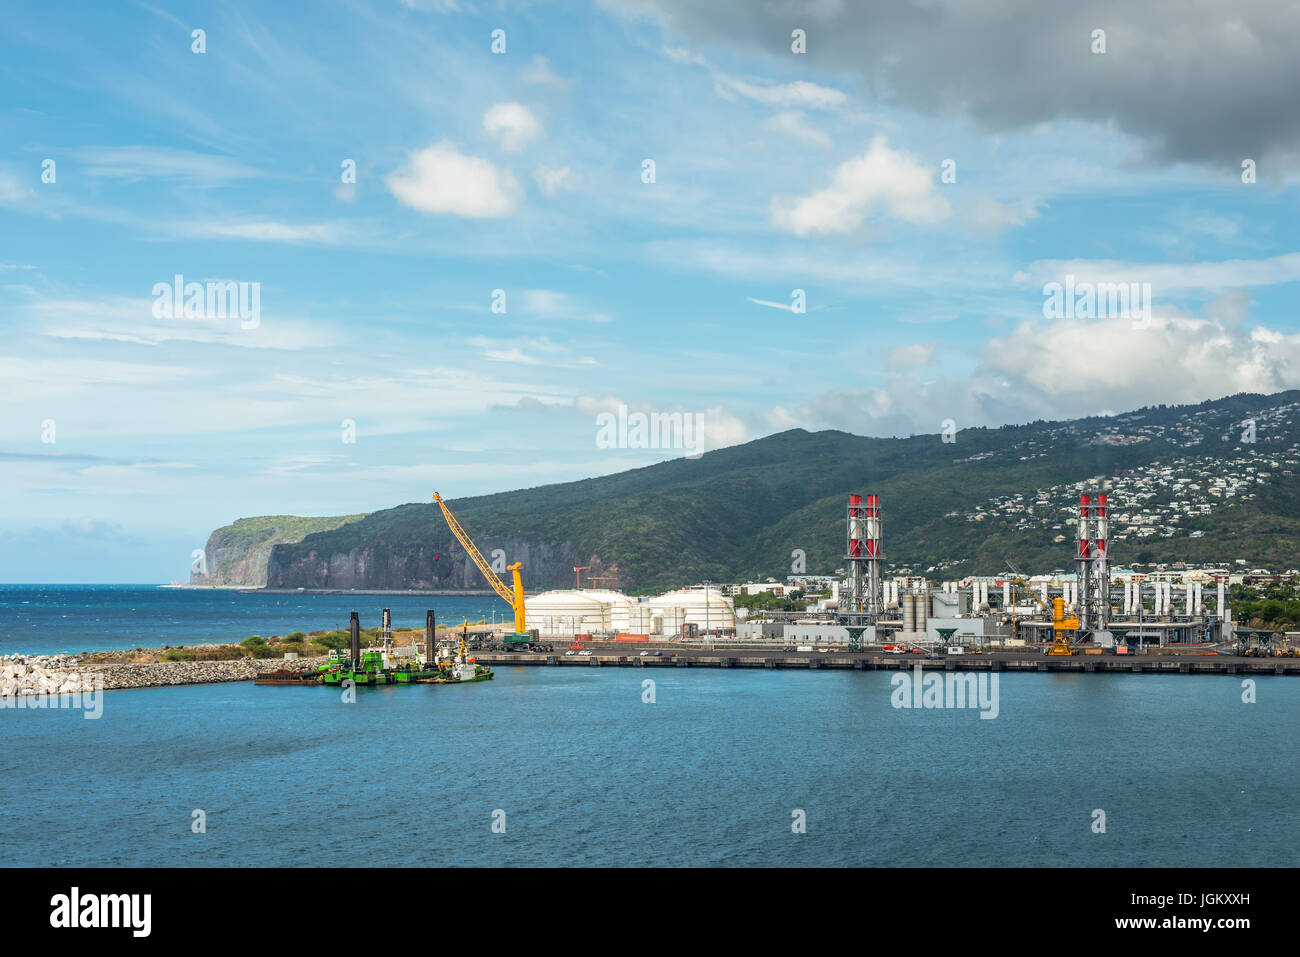 Le Port, l'île de la Réunion, France - 24 décembre 2015 : usines industrielles dans le Port, sur l'île de la Réunion, France. Banque D'Images